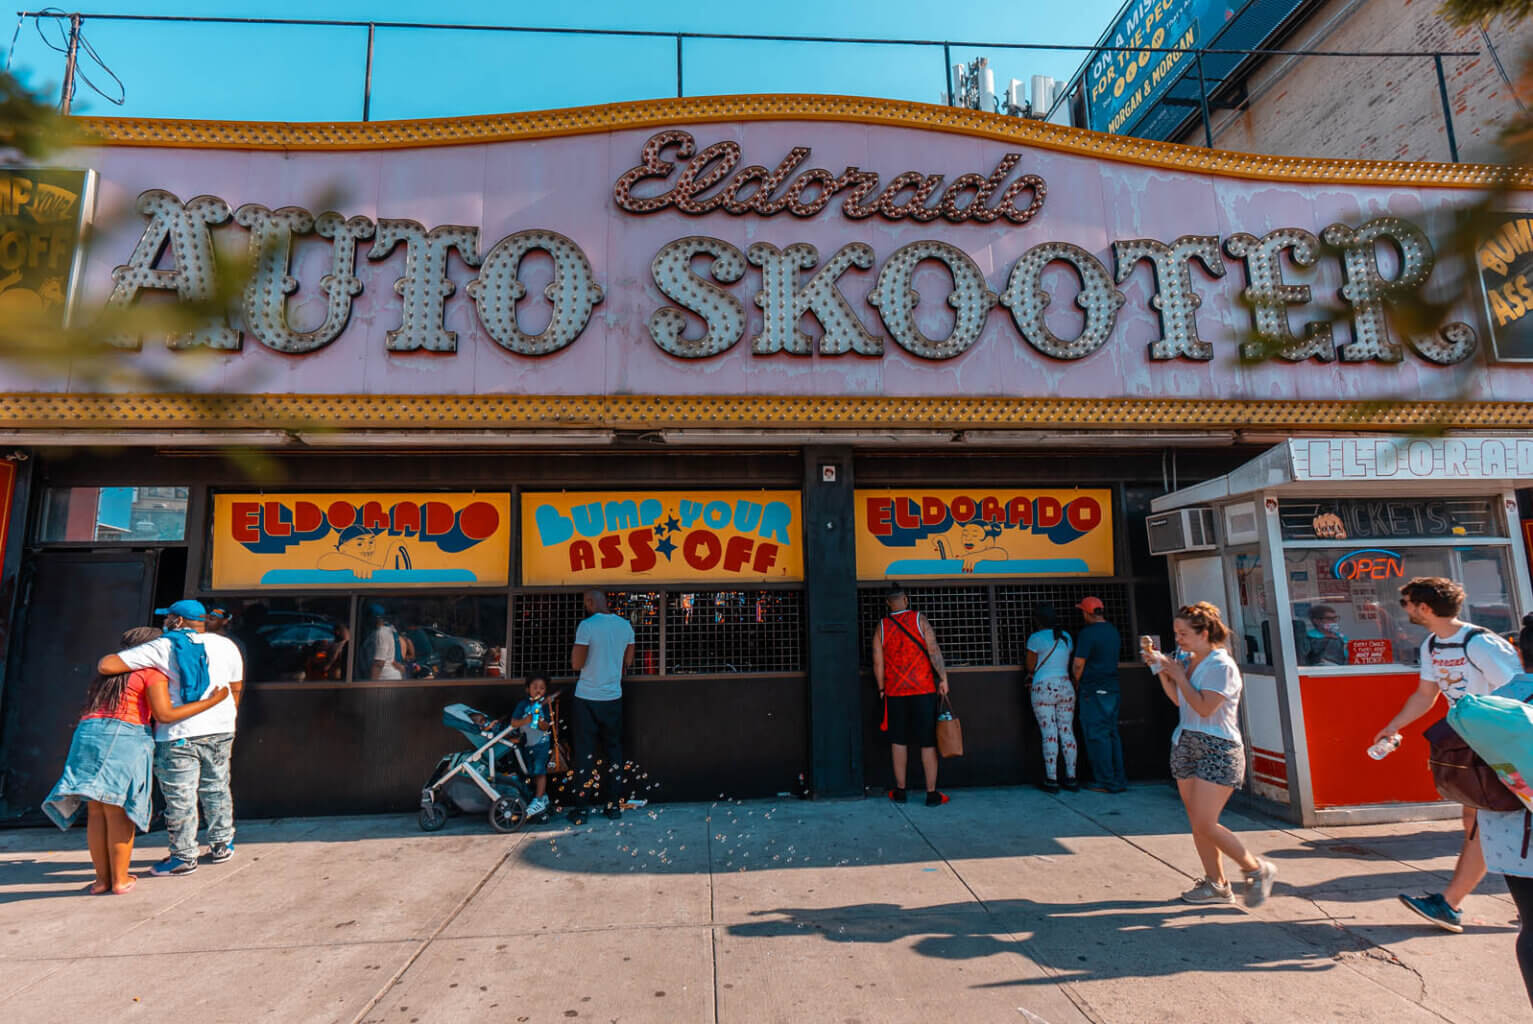 El Dorado AutoSkooter bumper cars and arcade at Coney Island Brooklyn